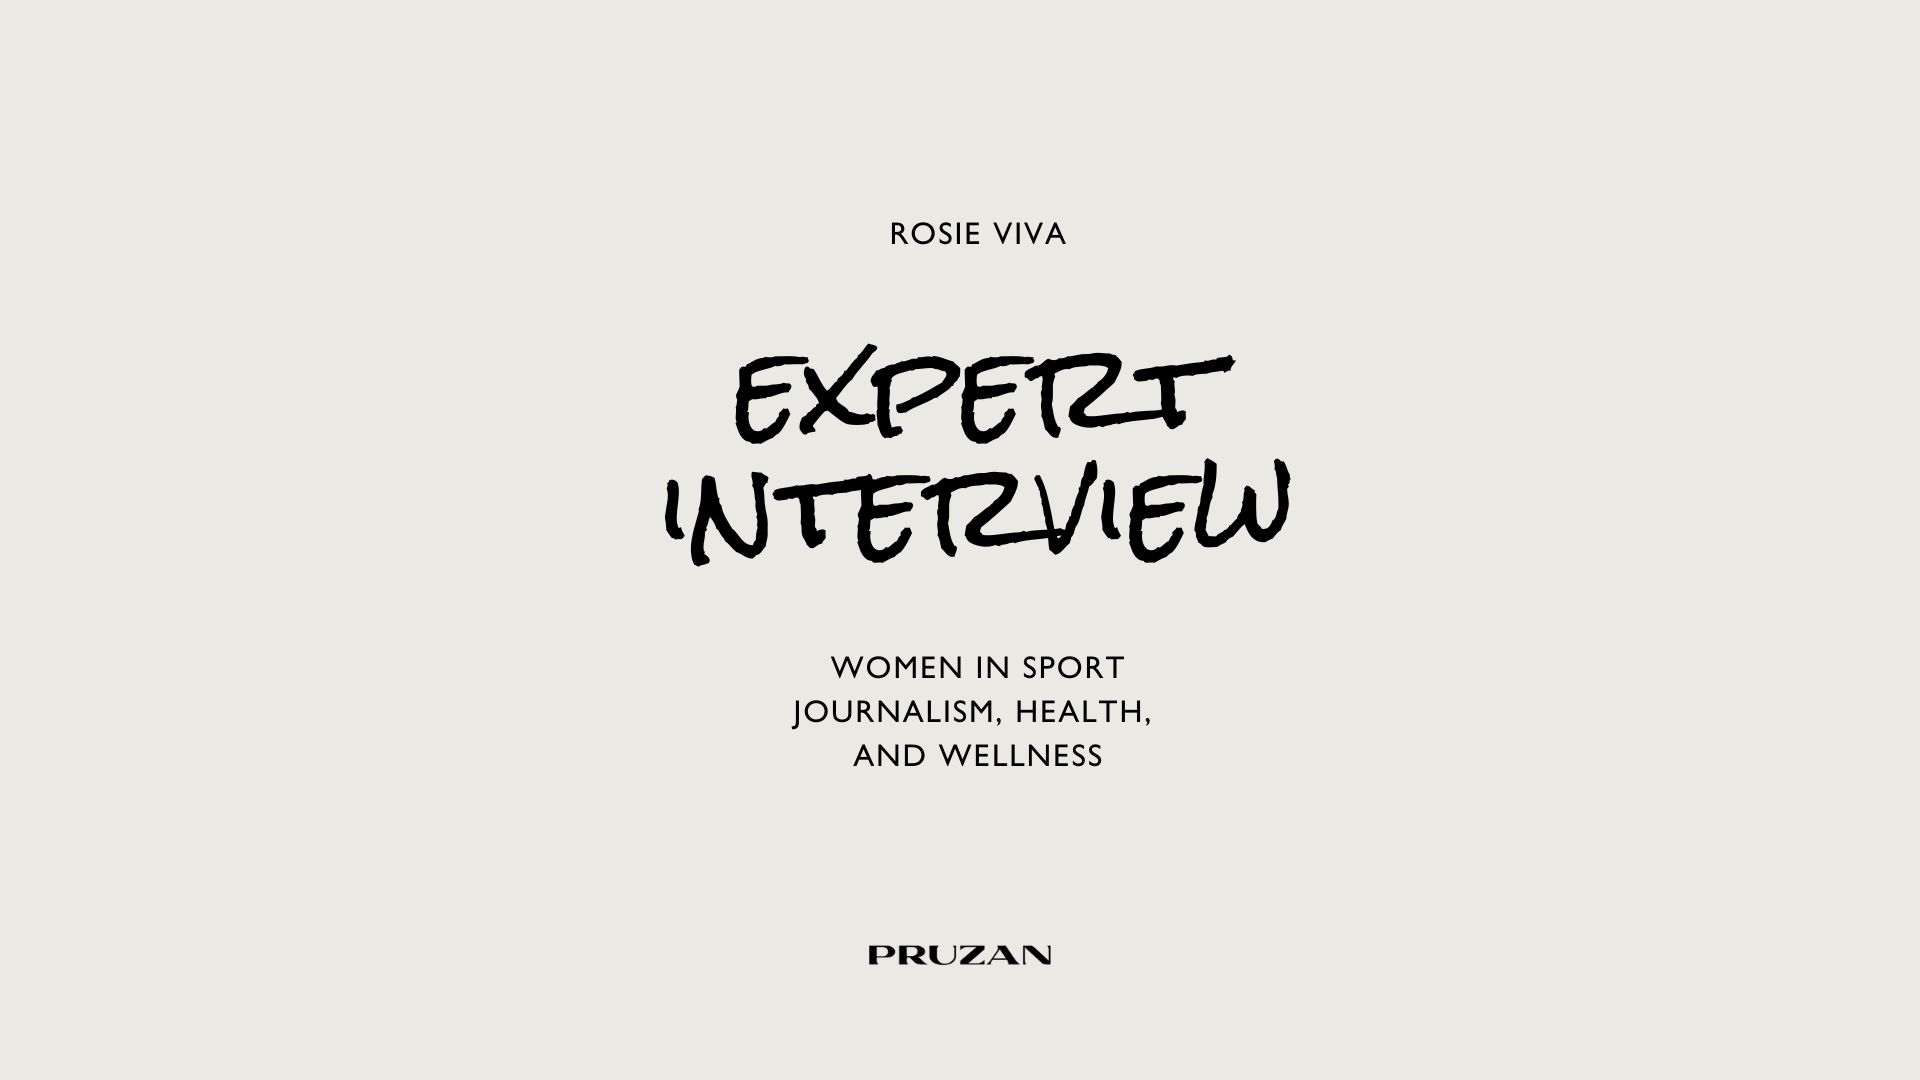 An Expert Interview on Women in Sport